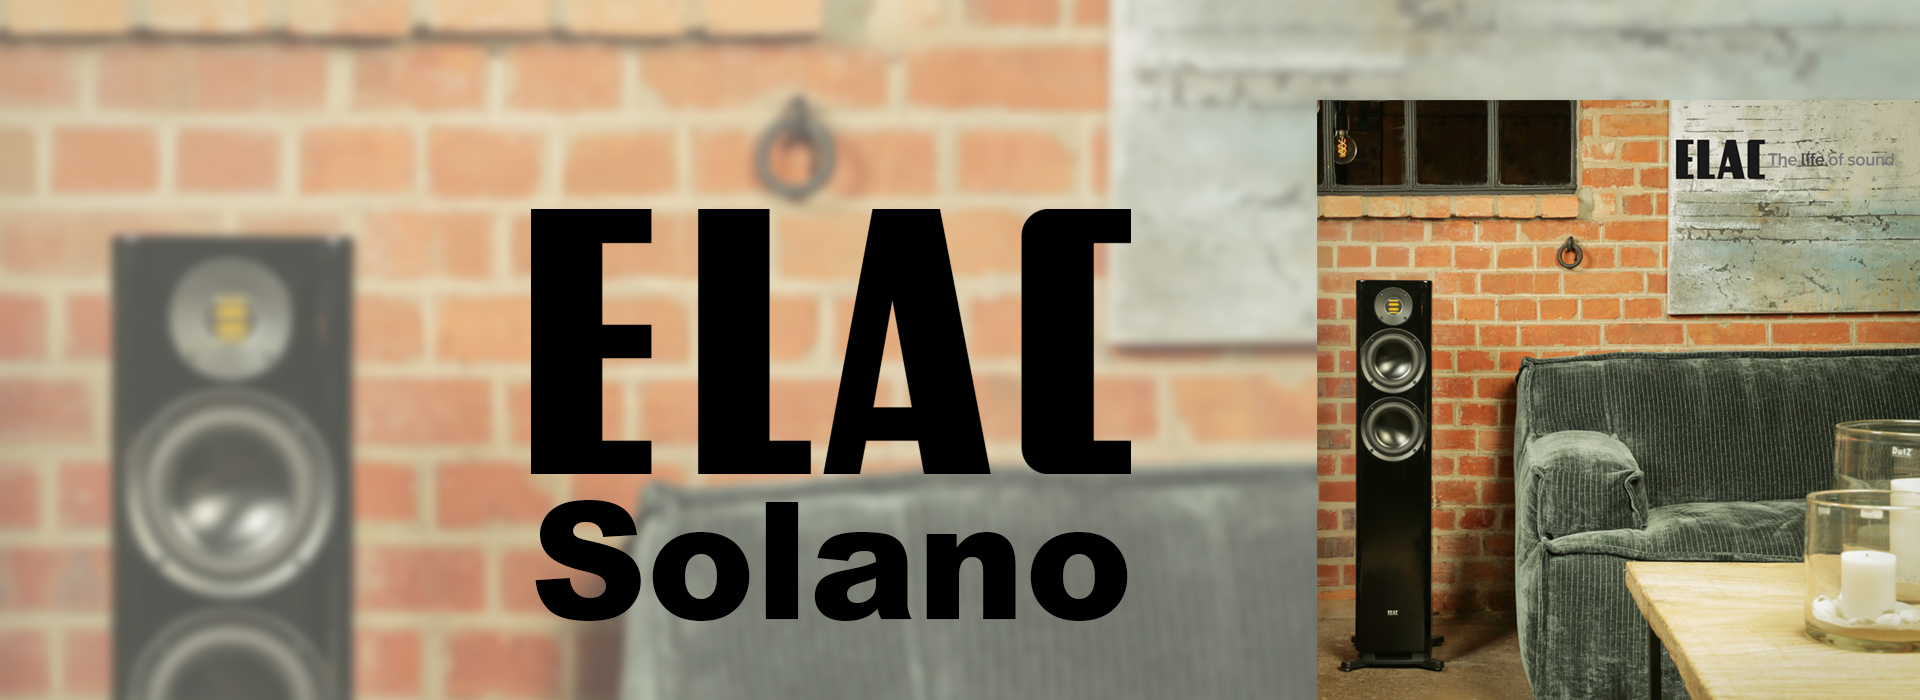 Elac Solano